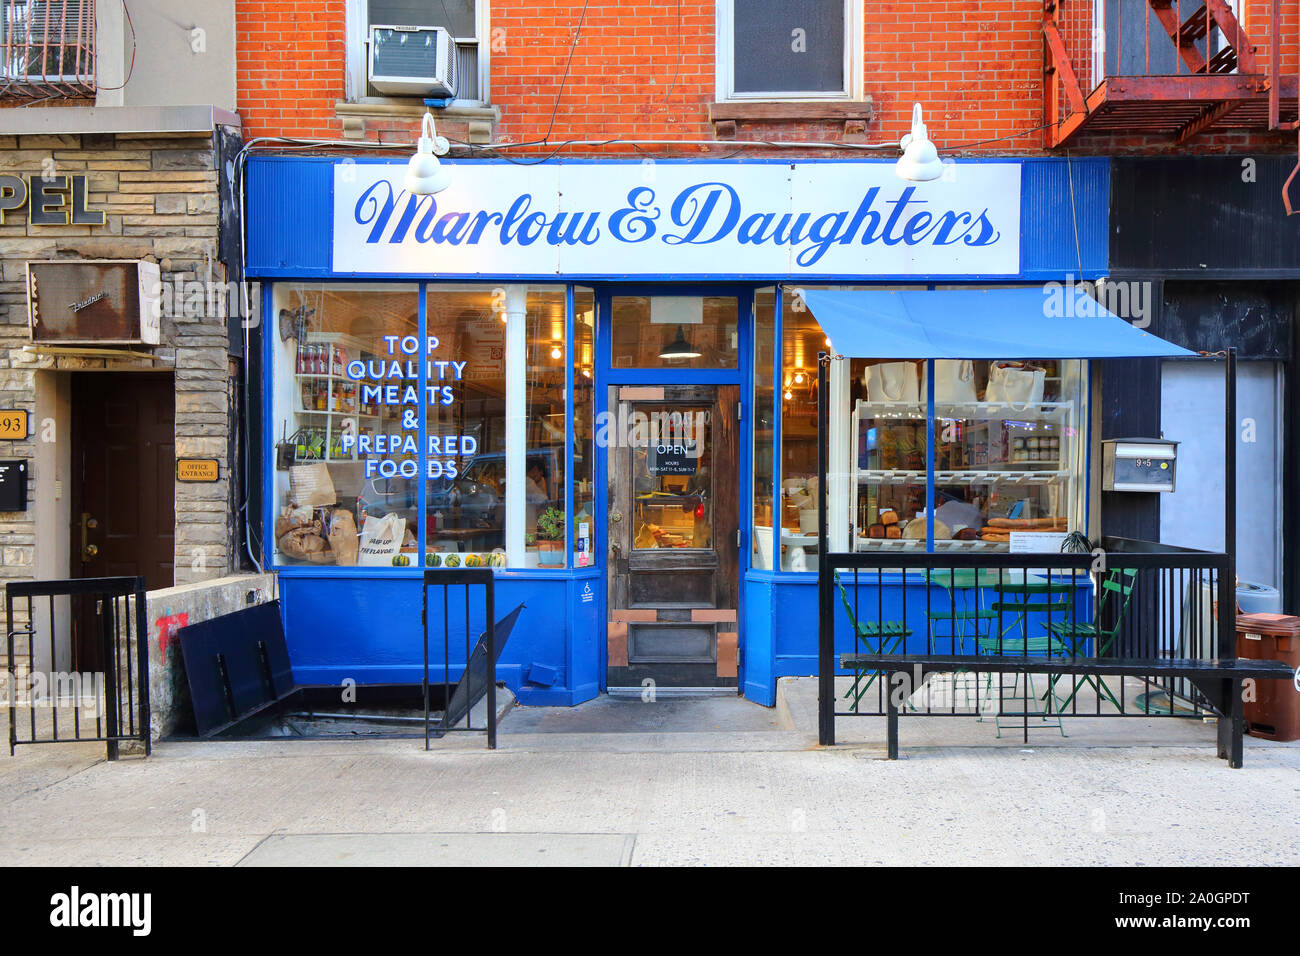 Marlow & Daughters, 95 Broadway, Brooklyn, New York. NYC boutique photo d'un marché gastronomique et de butcher animal entier dans le quartier de Williamsburg Banque D'Images